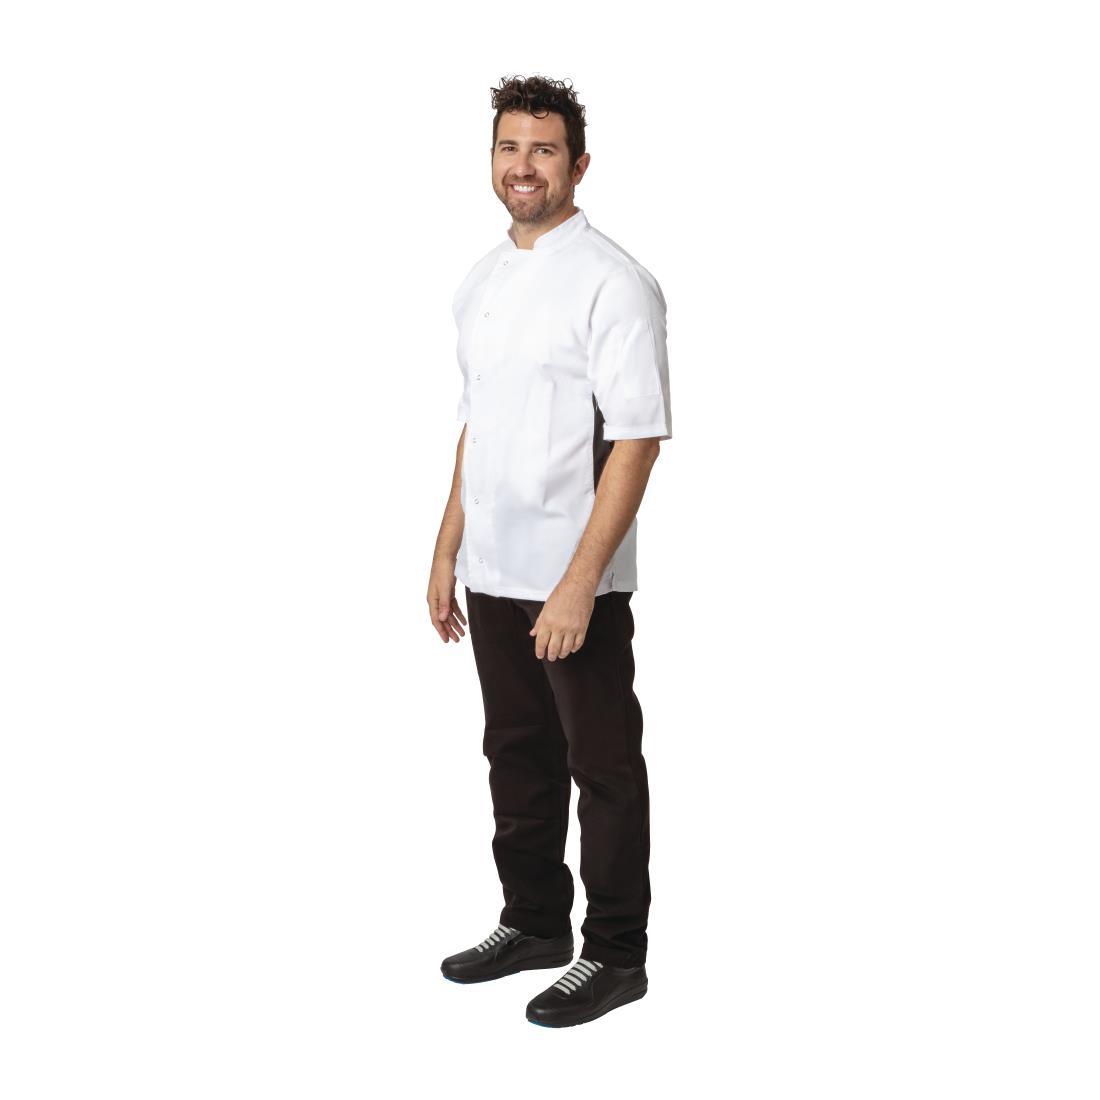 Whites Nevada Unisex Chefs Jacket Short Sleeve Black and White XS - A928-XS  - 3